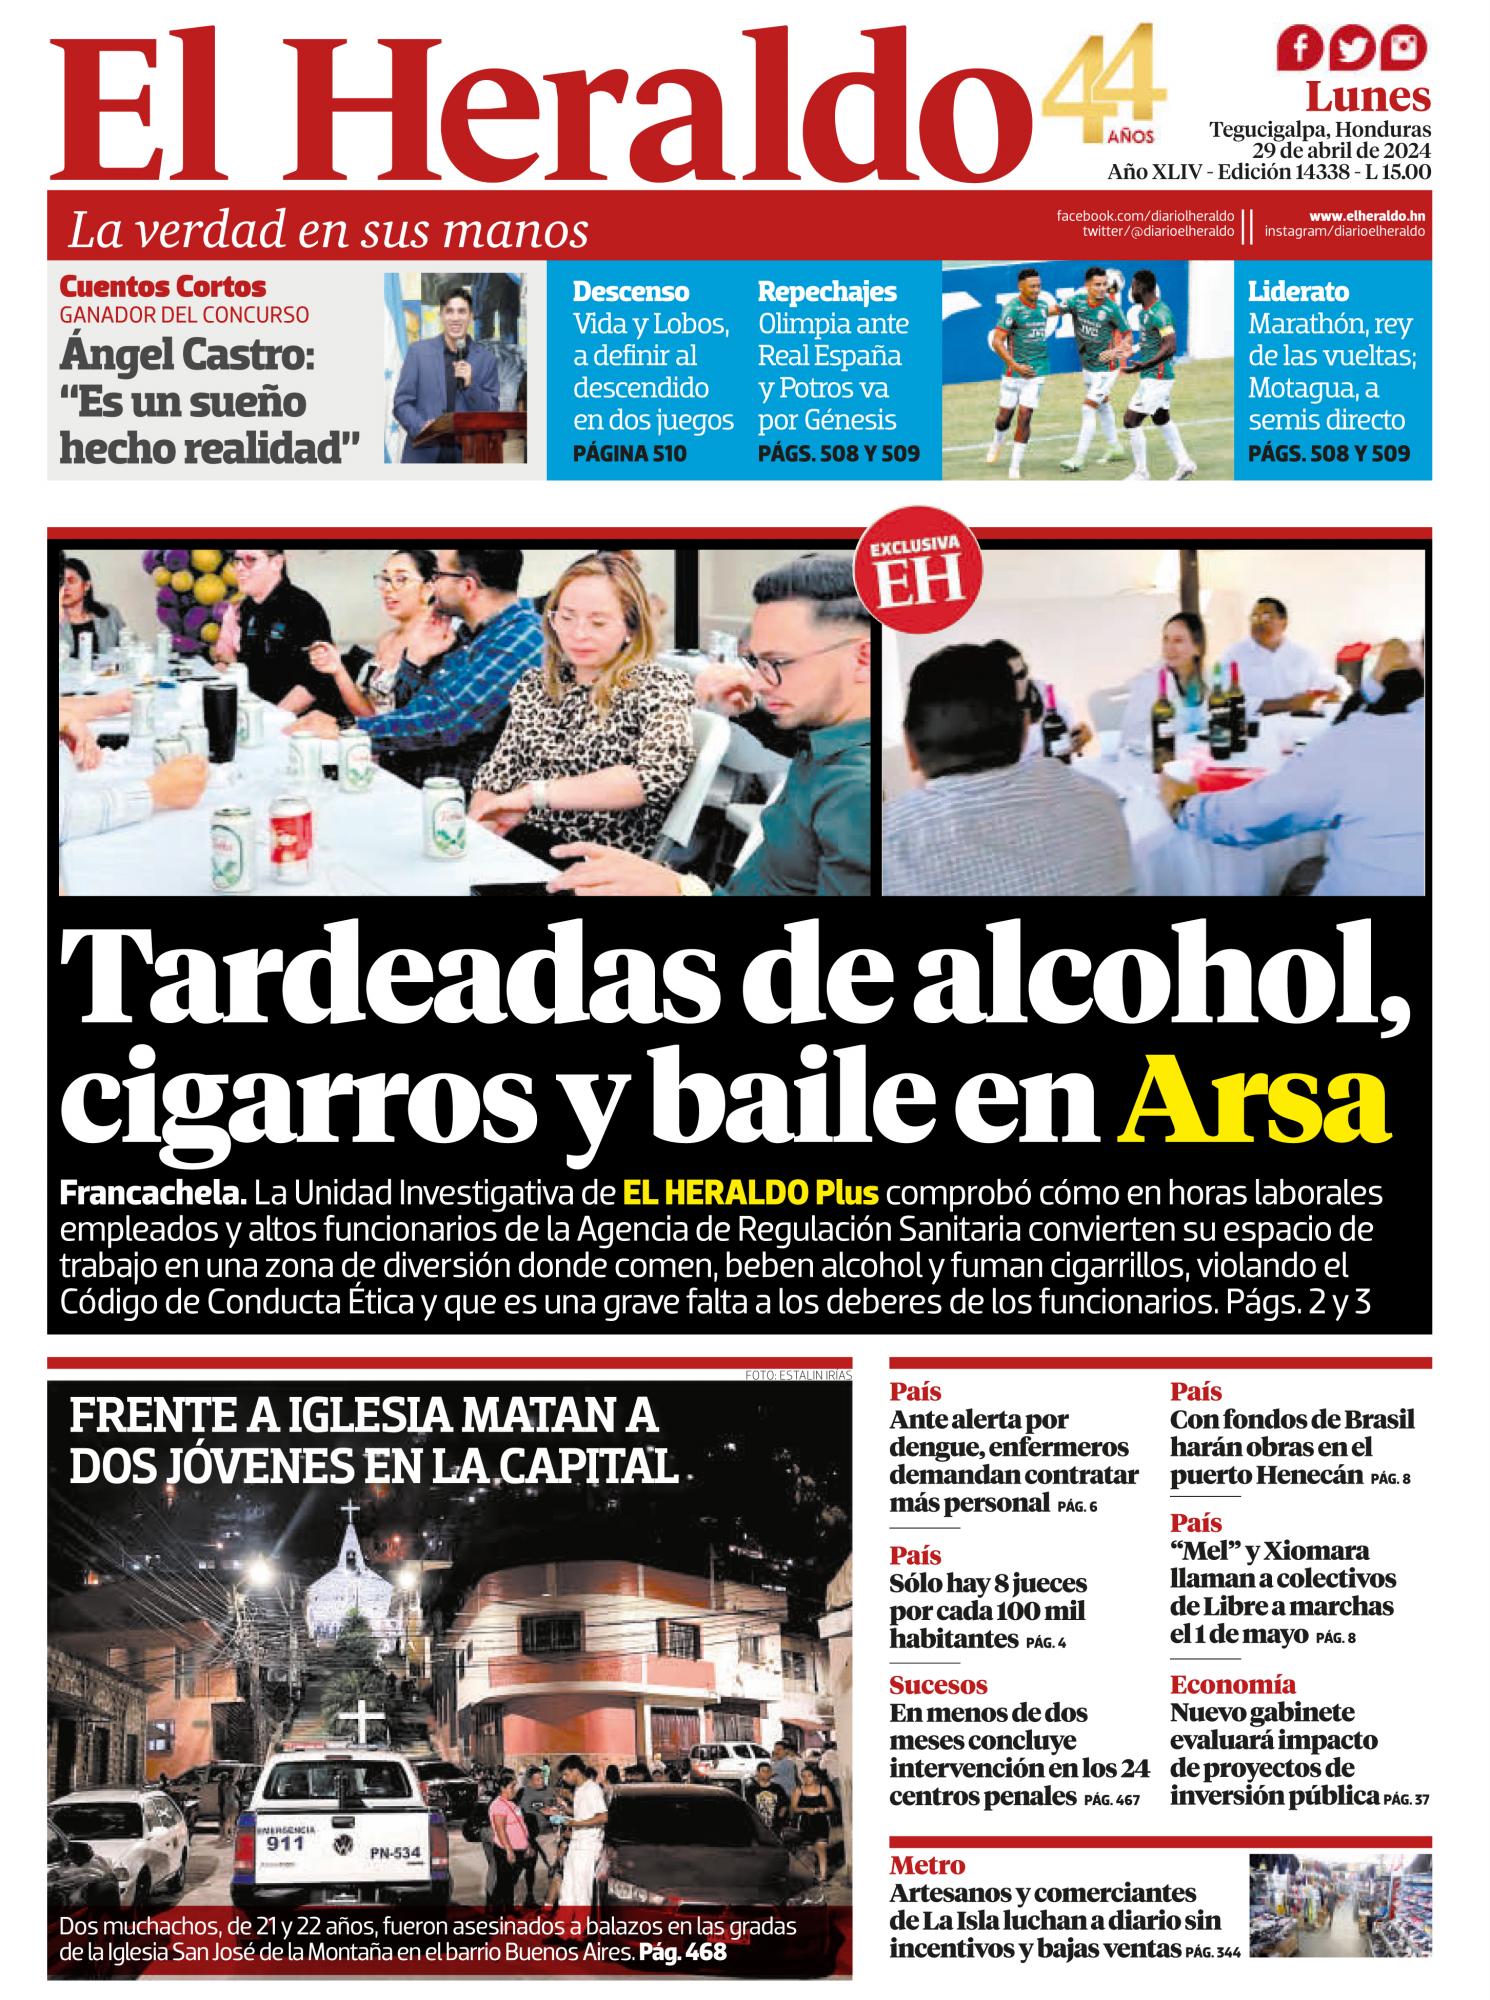 Tardeadas de alcohol, cigarros y baile en Arsa